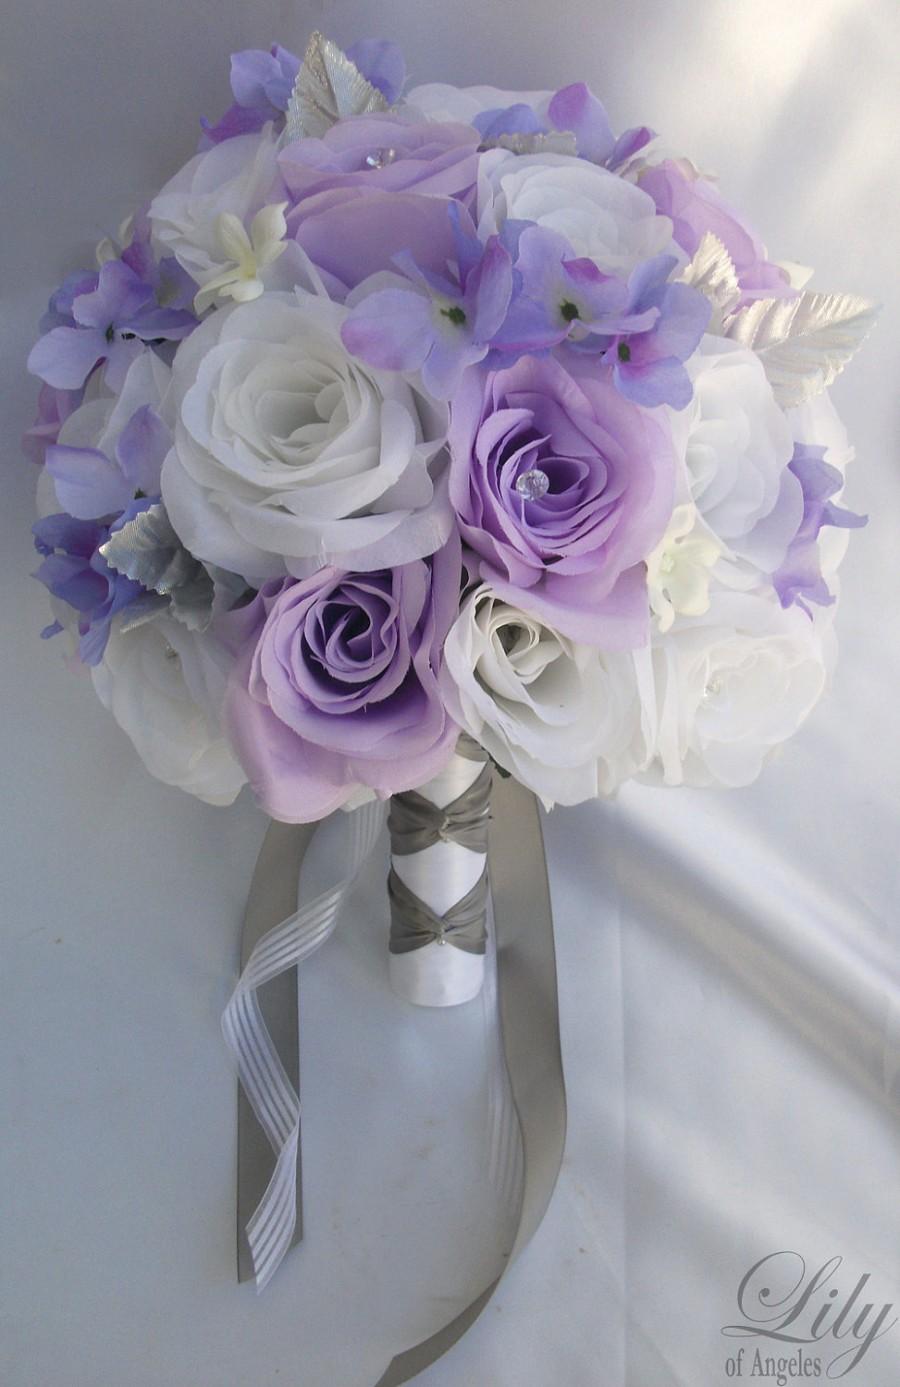 زفاف - 17 Piece Package Wedding Bridal Bride Maid Of Honor Bridesmaid Bouquet Boutonniere Corsage Silk Flower WHITE LAVENDER "Lily Of Angeles"